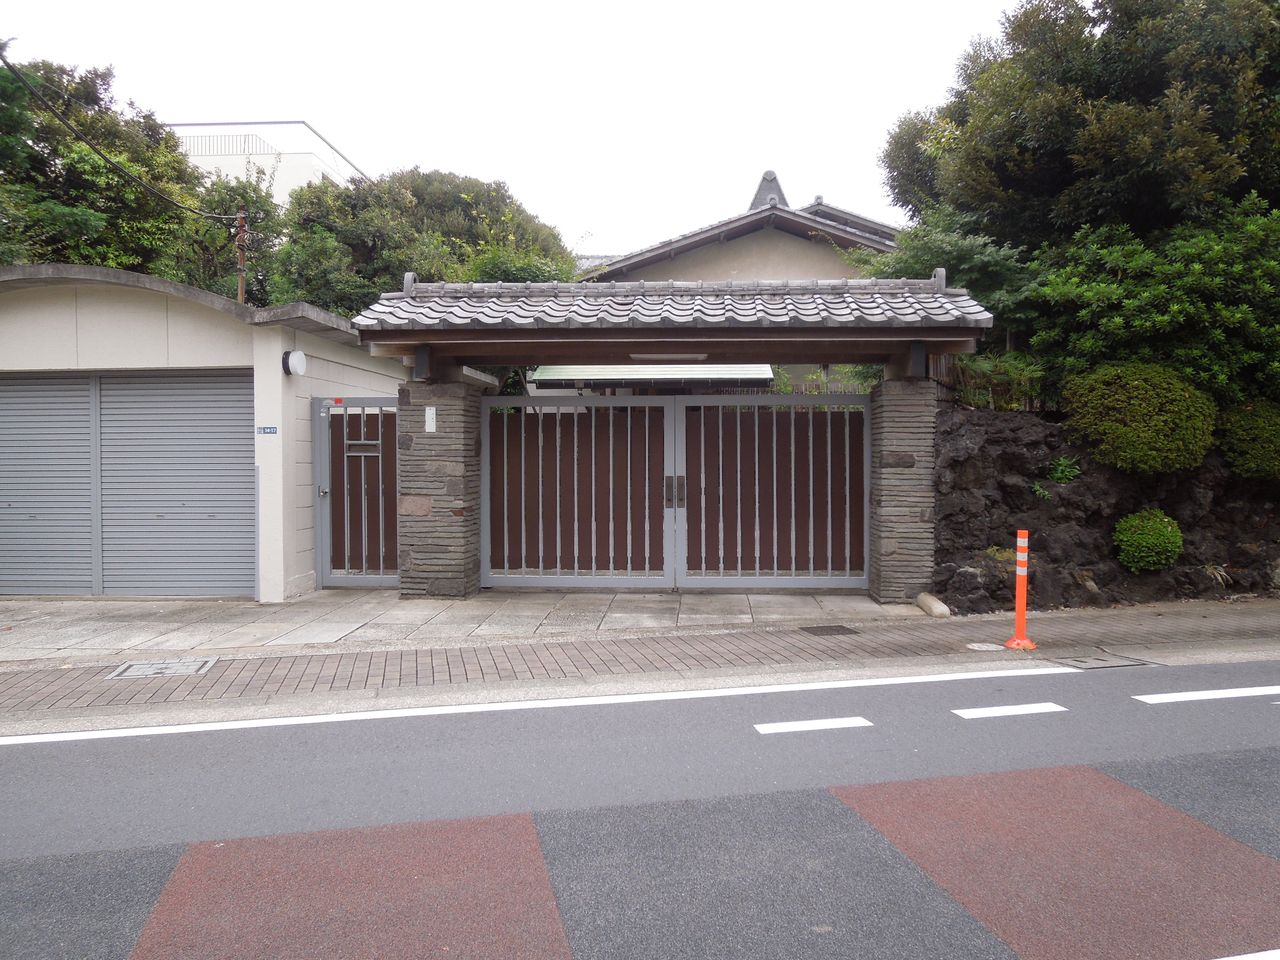 東京都内の豪邸探索ブログ
	  旗の台に敷地が広い三世代前ぐらいの豪邸がありました